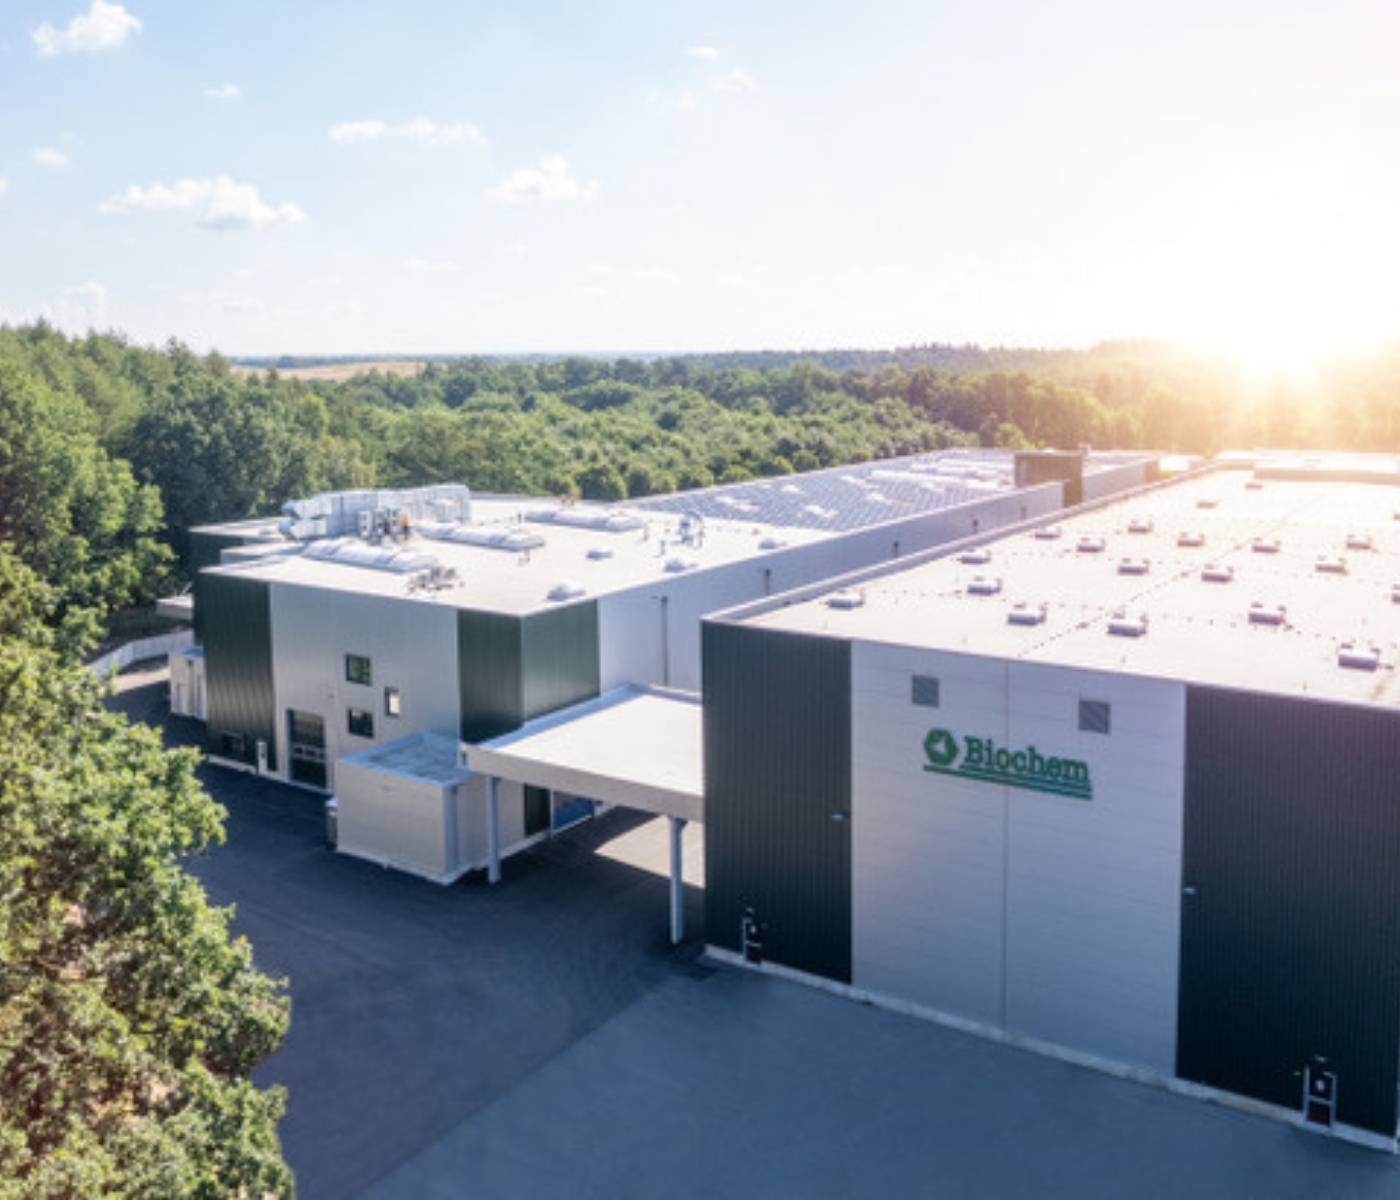 Biochem anuncia a abertura de nova fábrica em Lohne na Alemanha